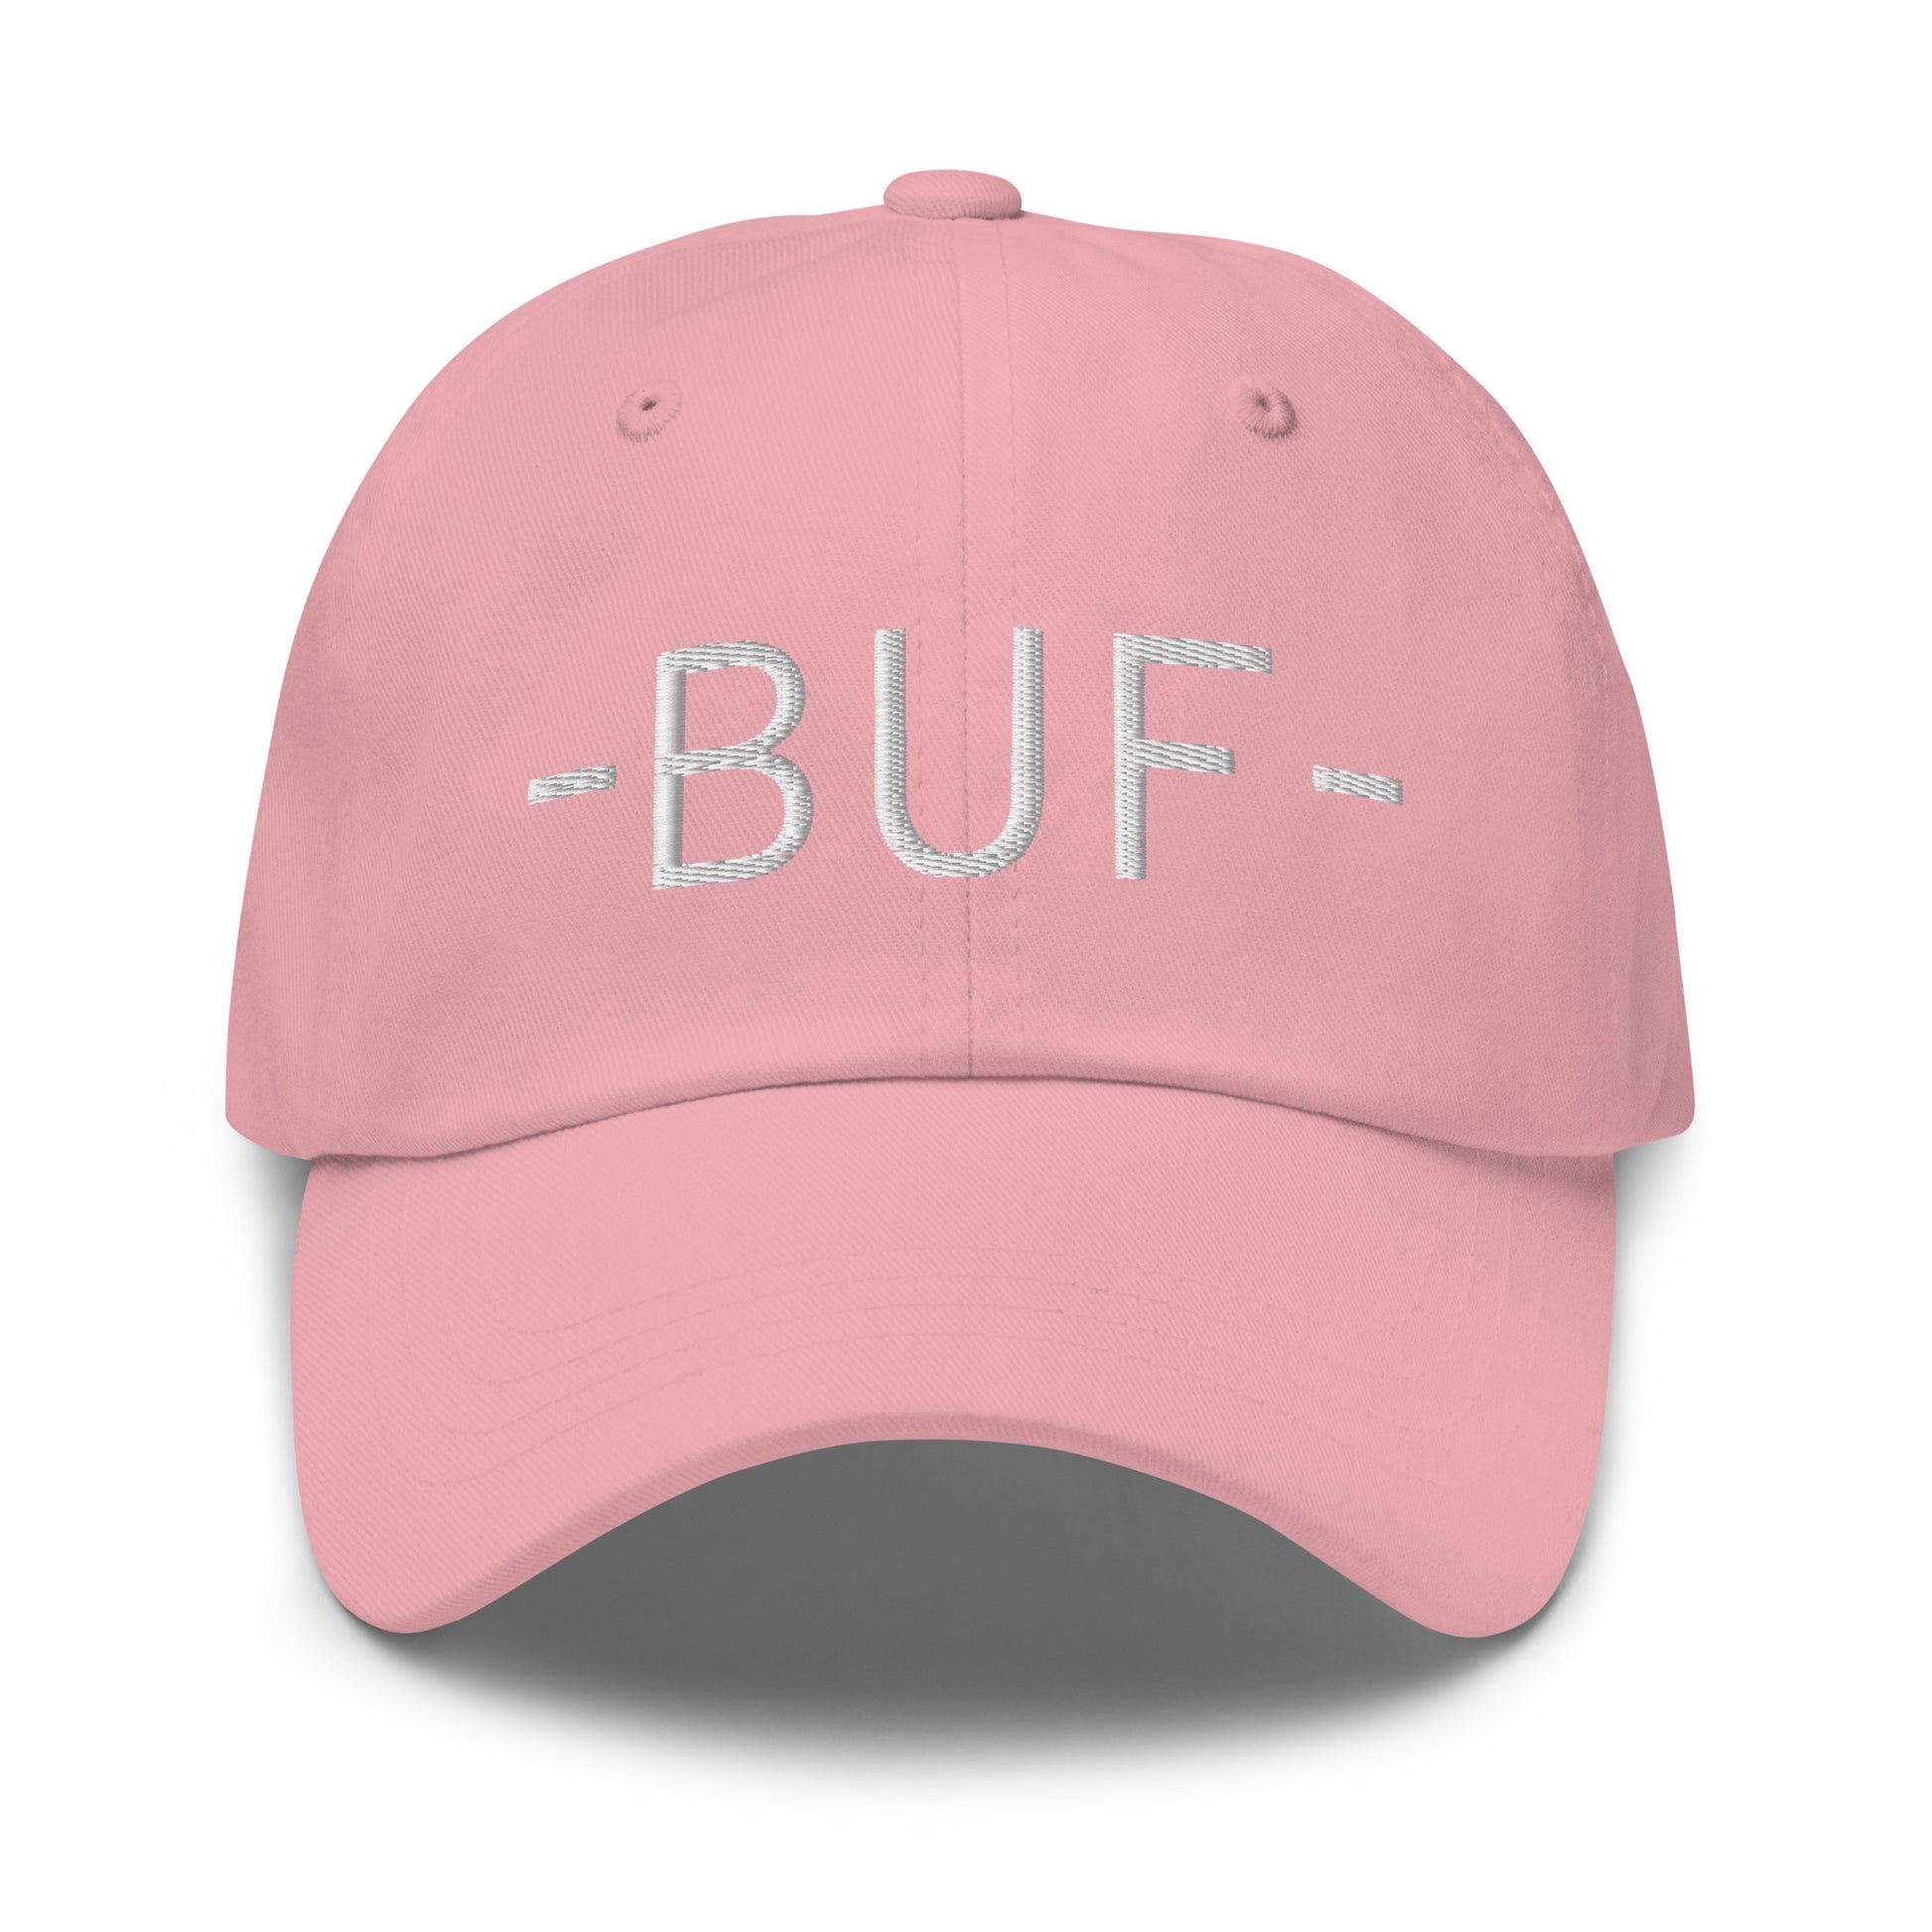 Souvenir Baseball Cap - White • BUF Buffalo • YHM Designs - Image 25